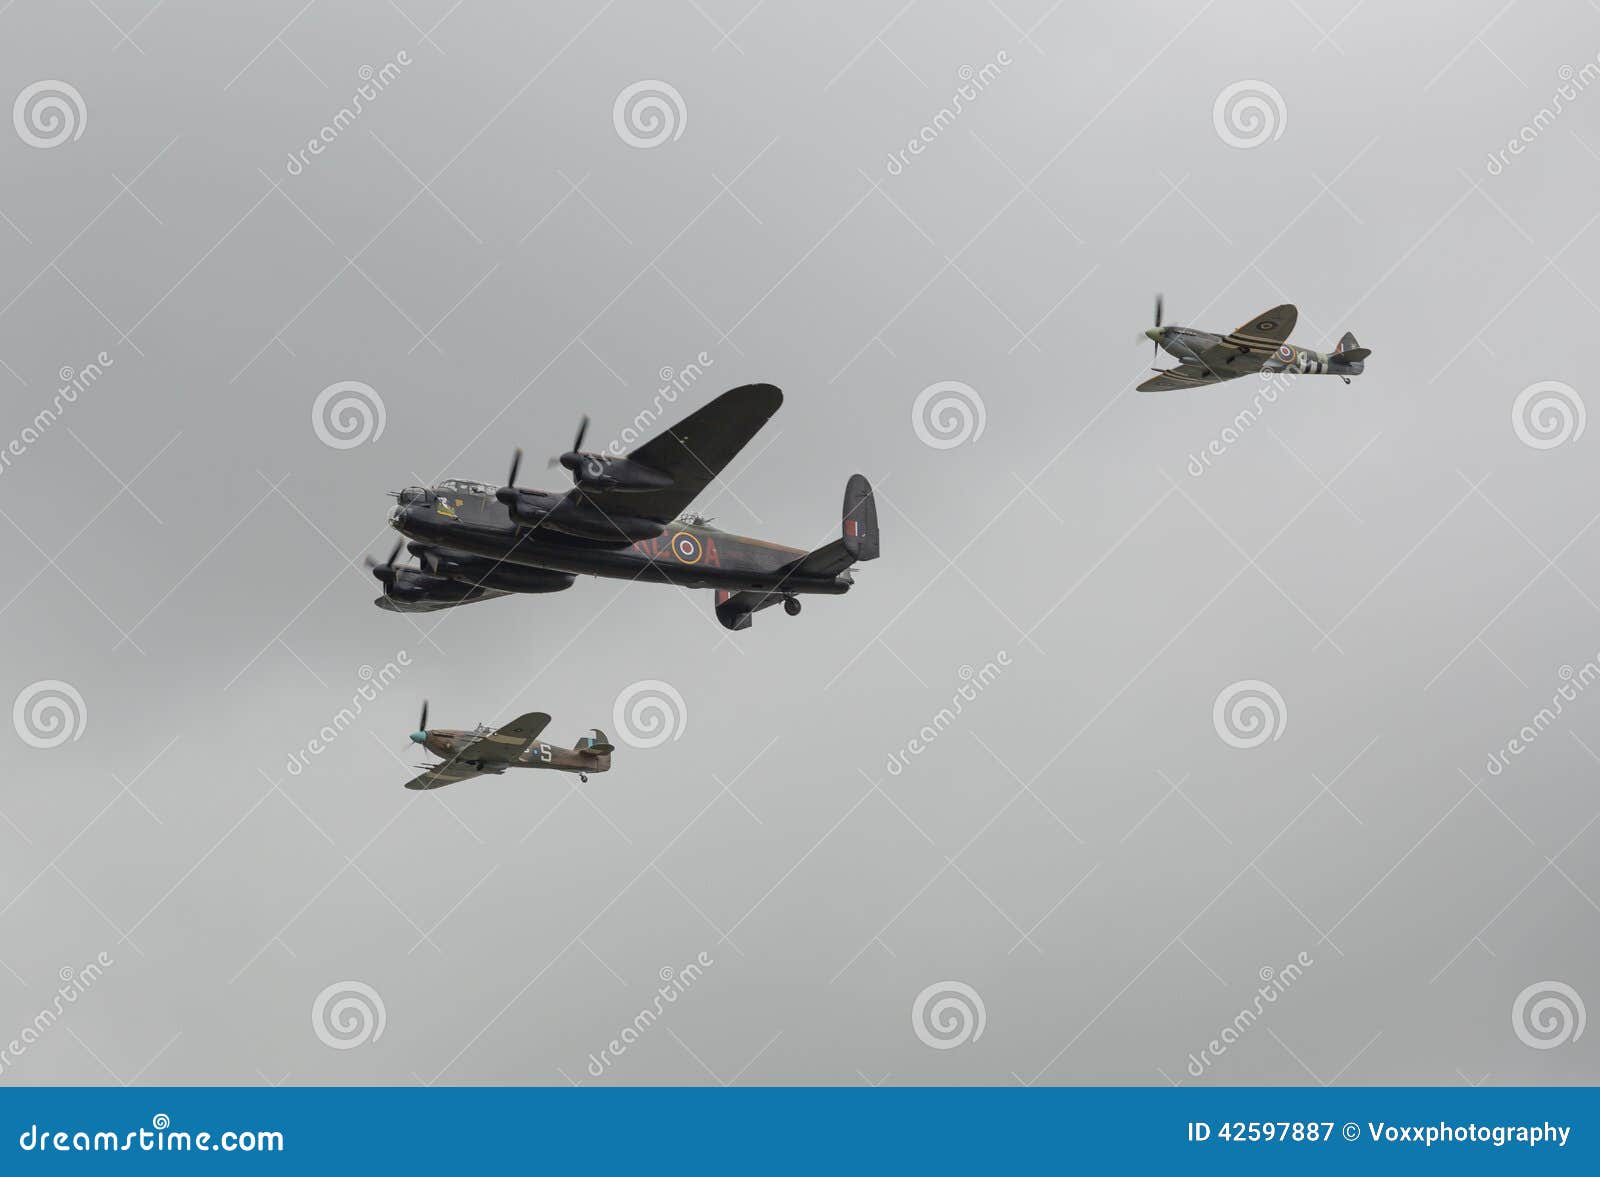 world war 2 planes